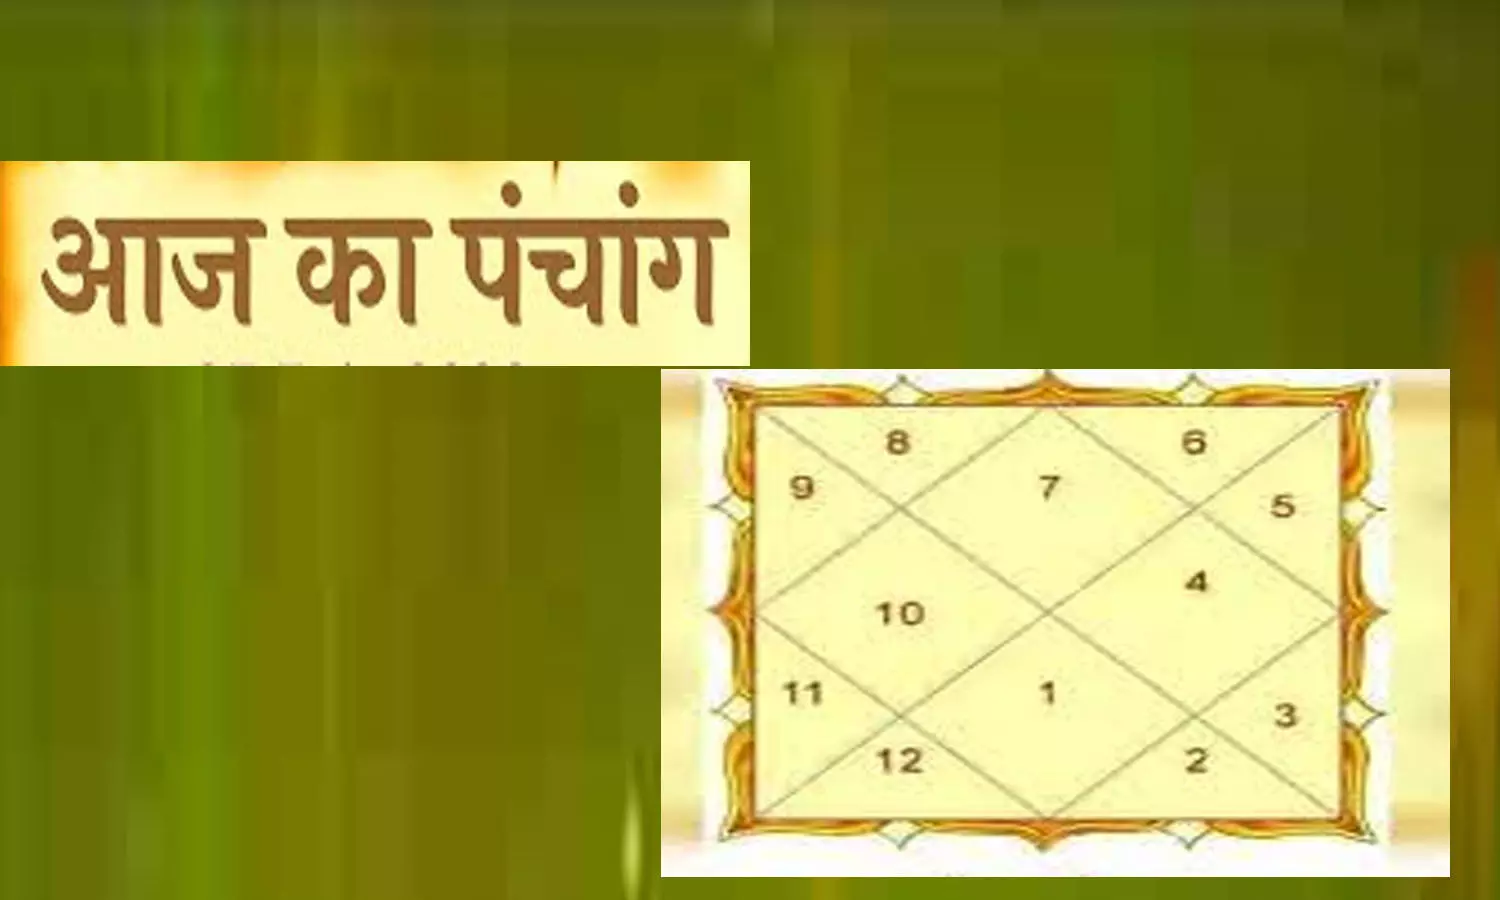 14 February 2023 Ka Panchang Tithi in Hindi : वेलेनटाइन डे के दिन कब रहेगा शुभ-अशुभ समय, जानने के लिए देखिए आज का पंचांग